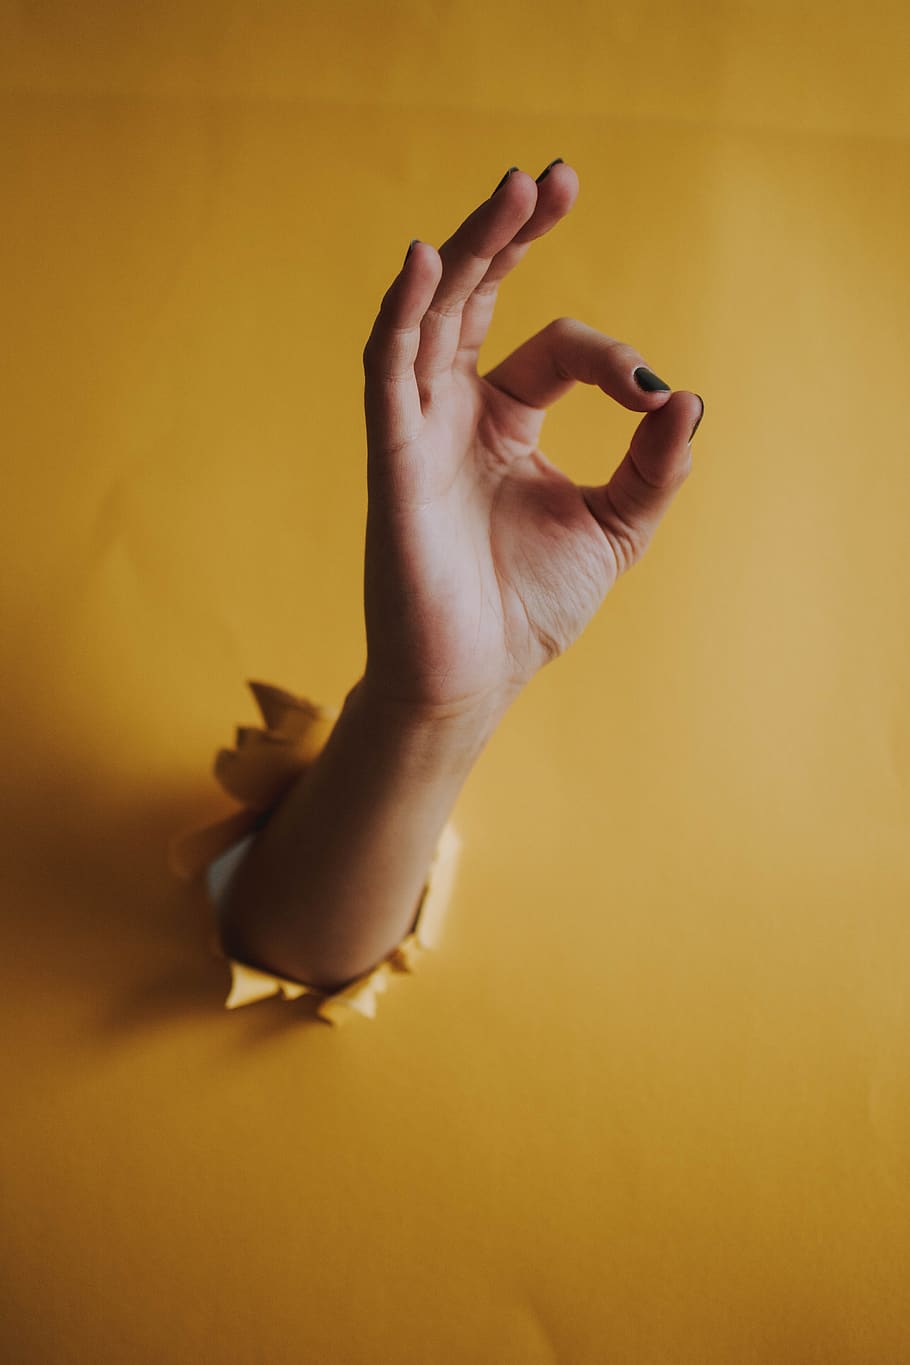 mão, amarelo, buraco, caracteres, símbolo, mão humana, parte do corpo humano, uma pessoa, dentro de casa, característica de construção de parede